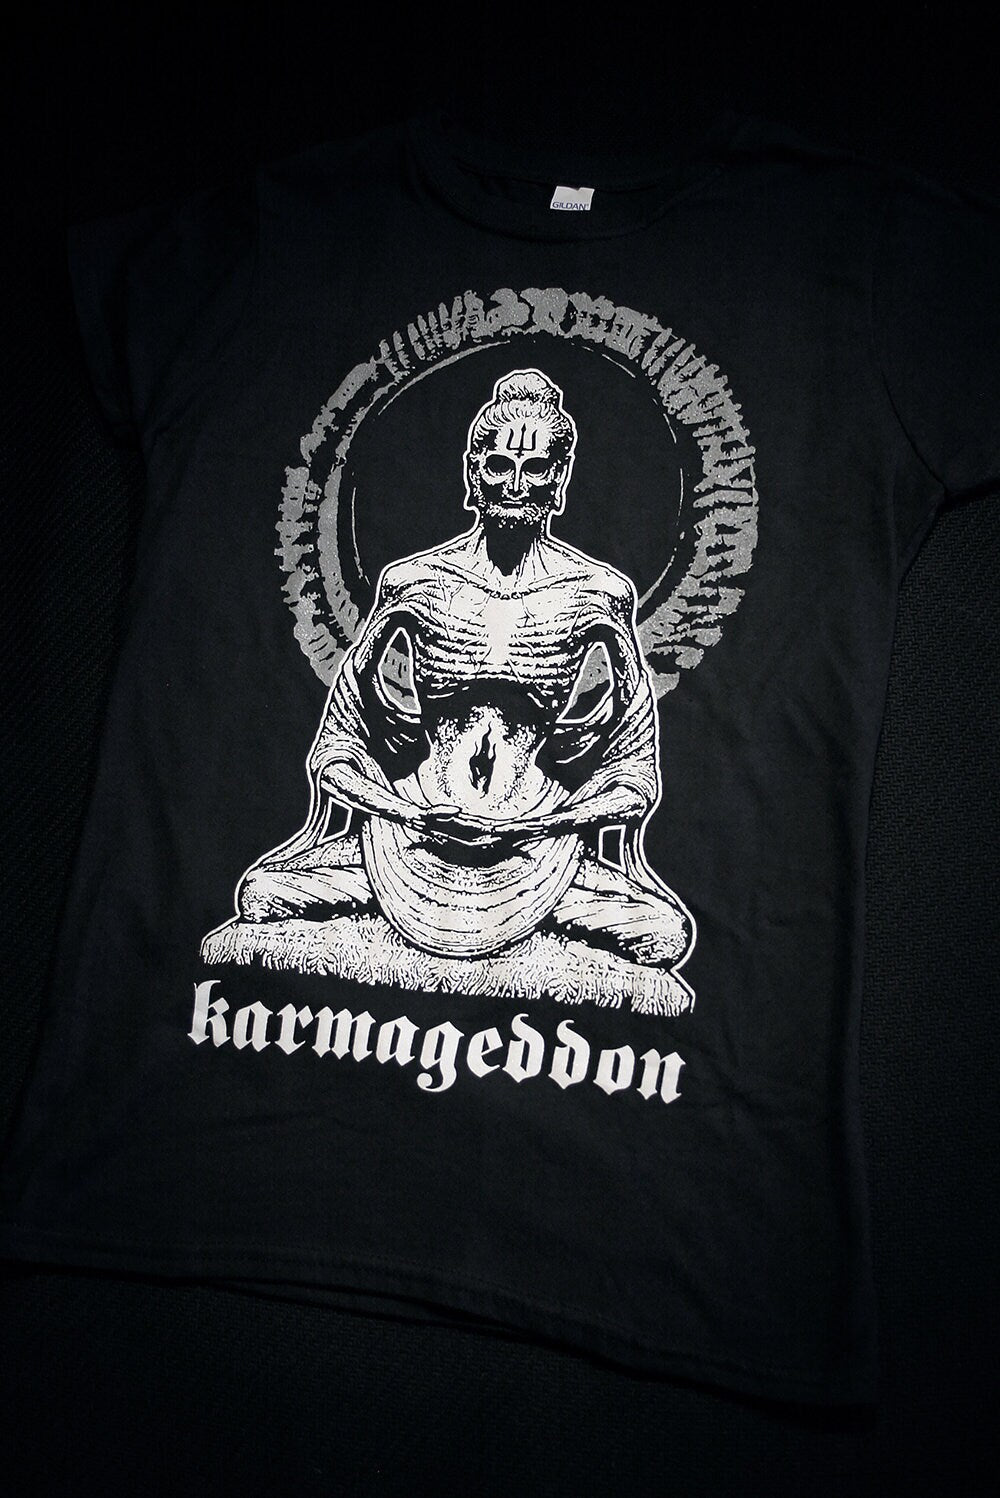 Karmageddon - T-shirt female fitted